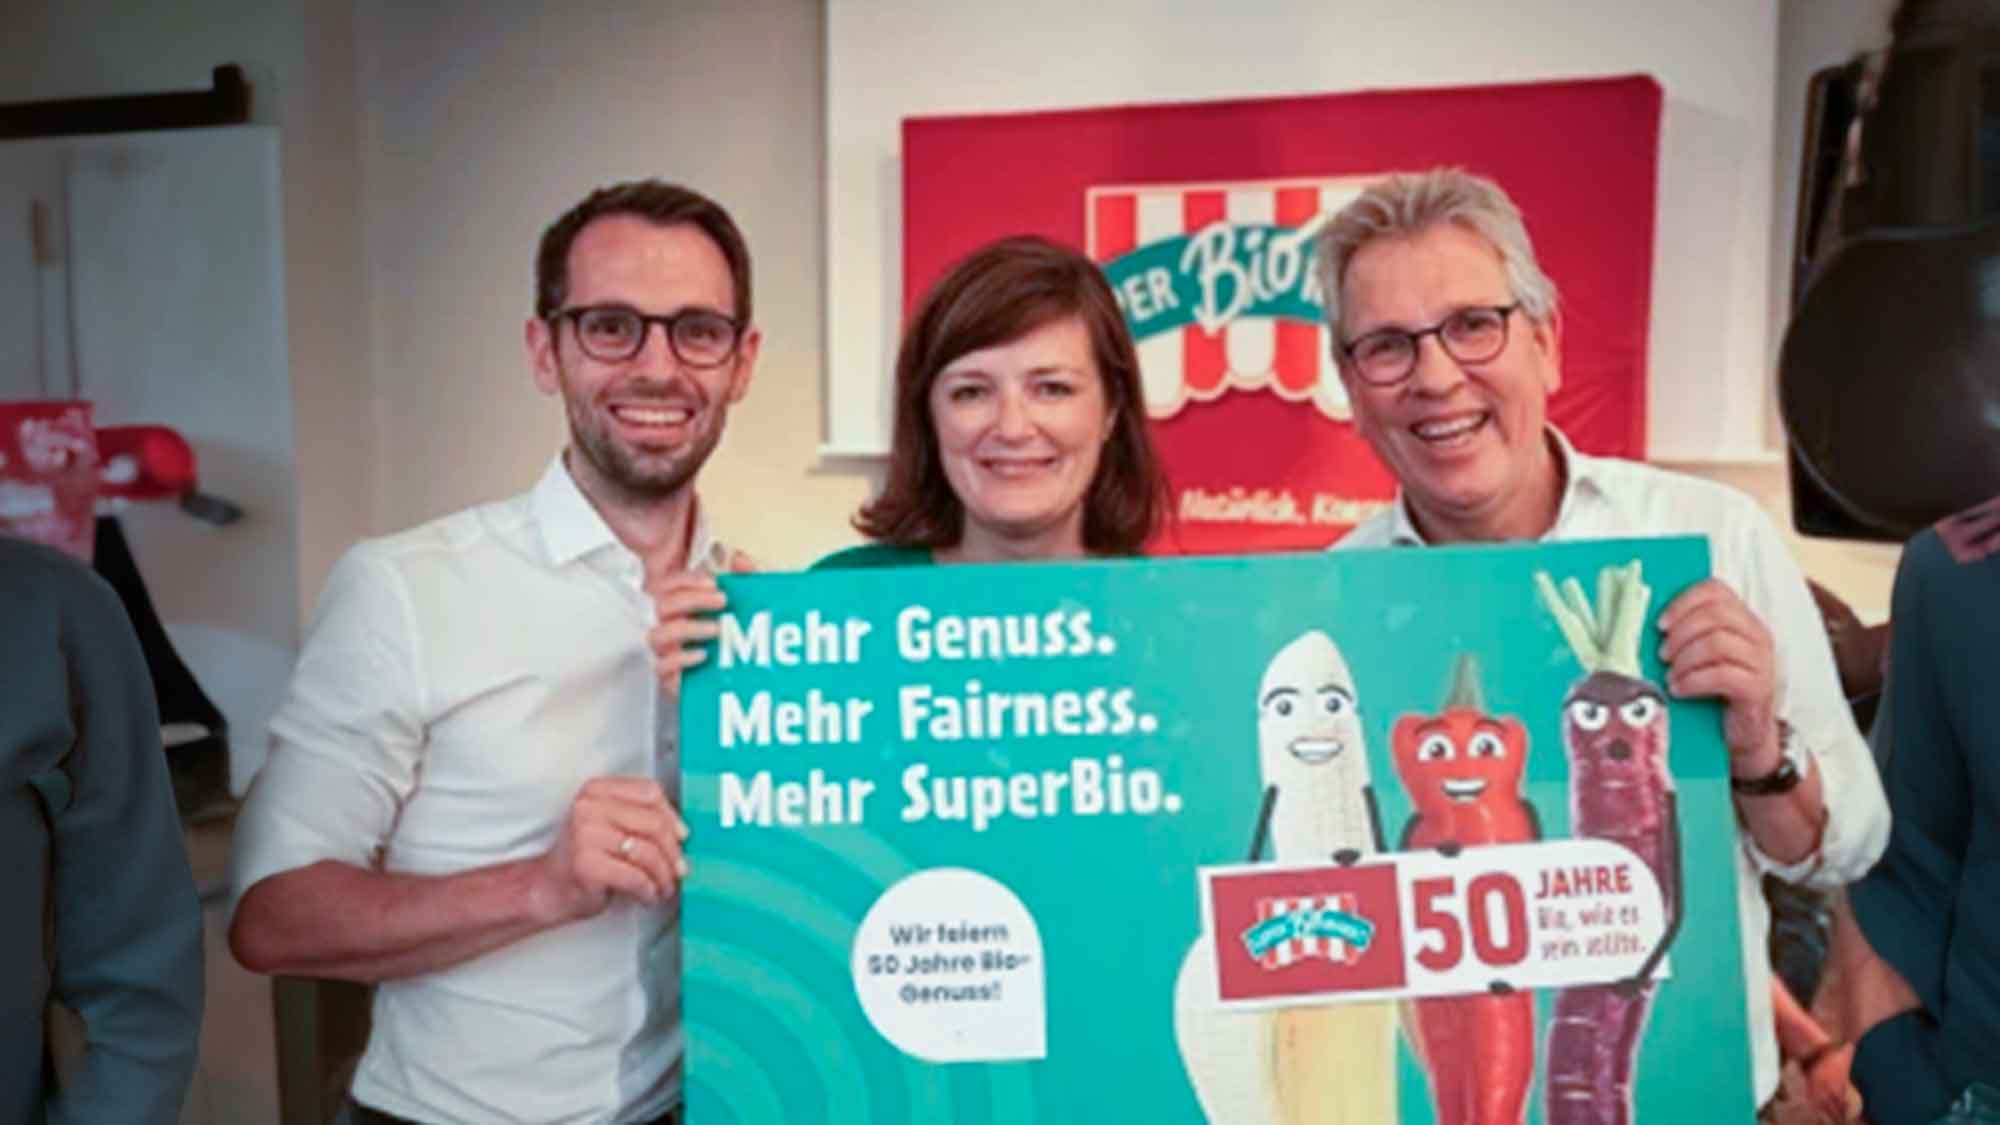 Kinderhilfsorganisation erhält großzügige Spende von »SuperBioMarkt« anlässlich seines 50. Jubiläums